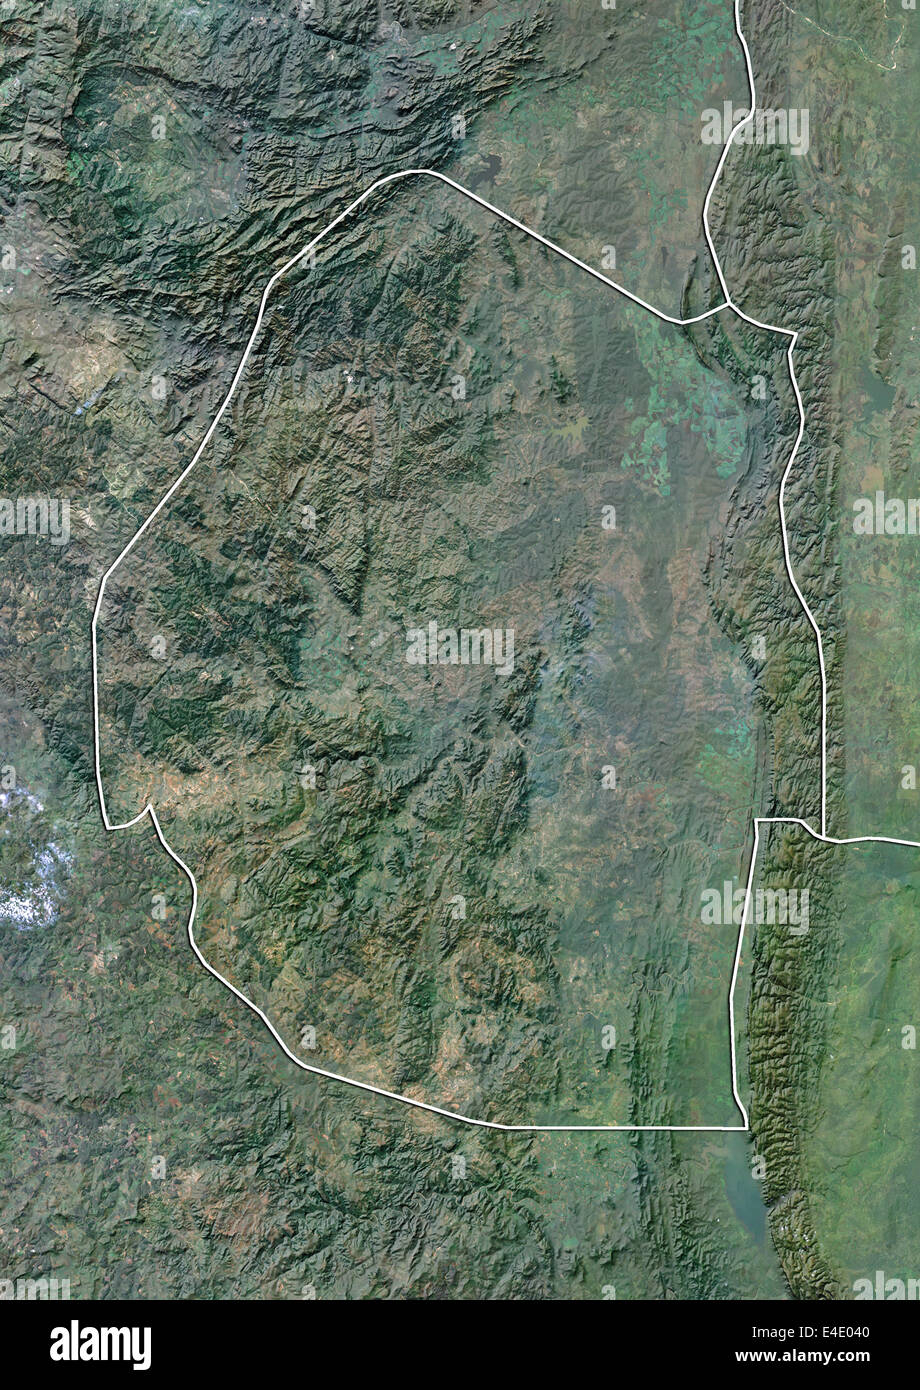 Le Swaziland, image satellite avec effet de choc, avec bordure Banque D'Images